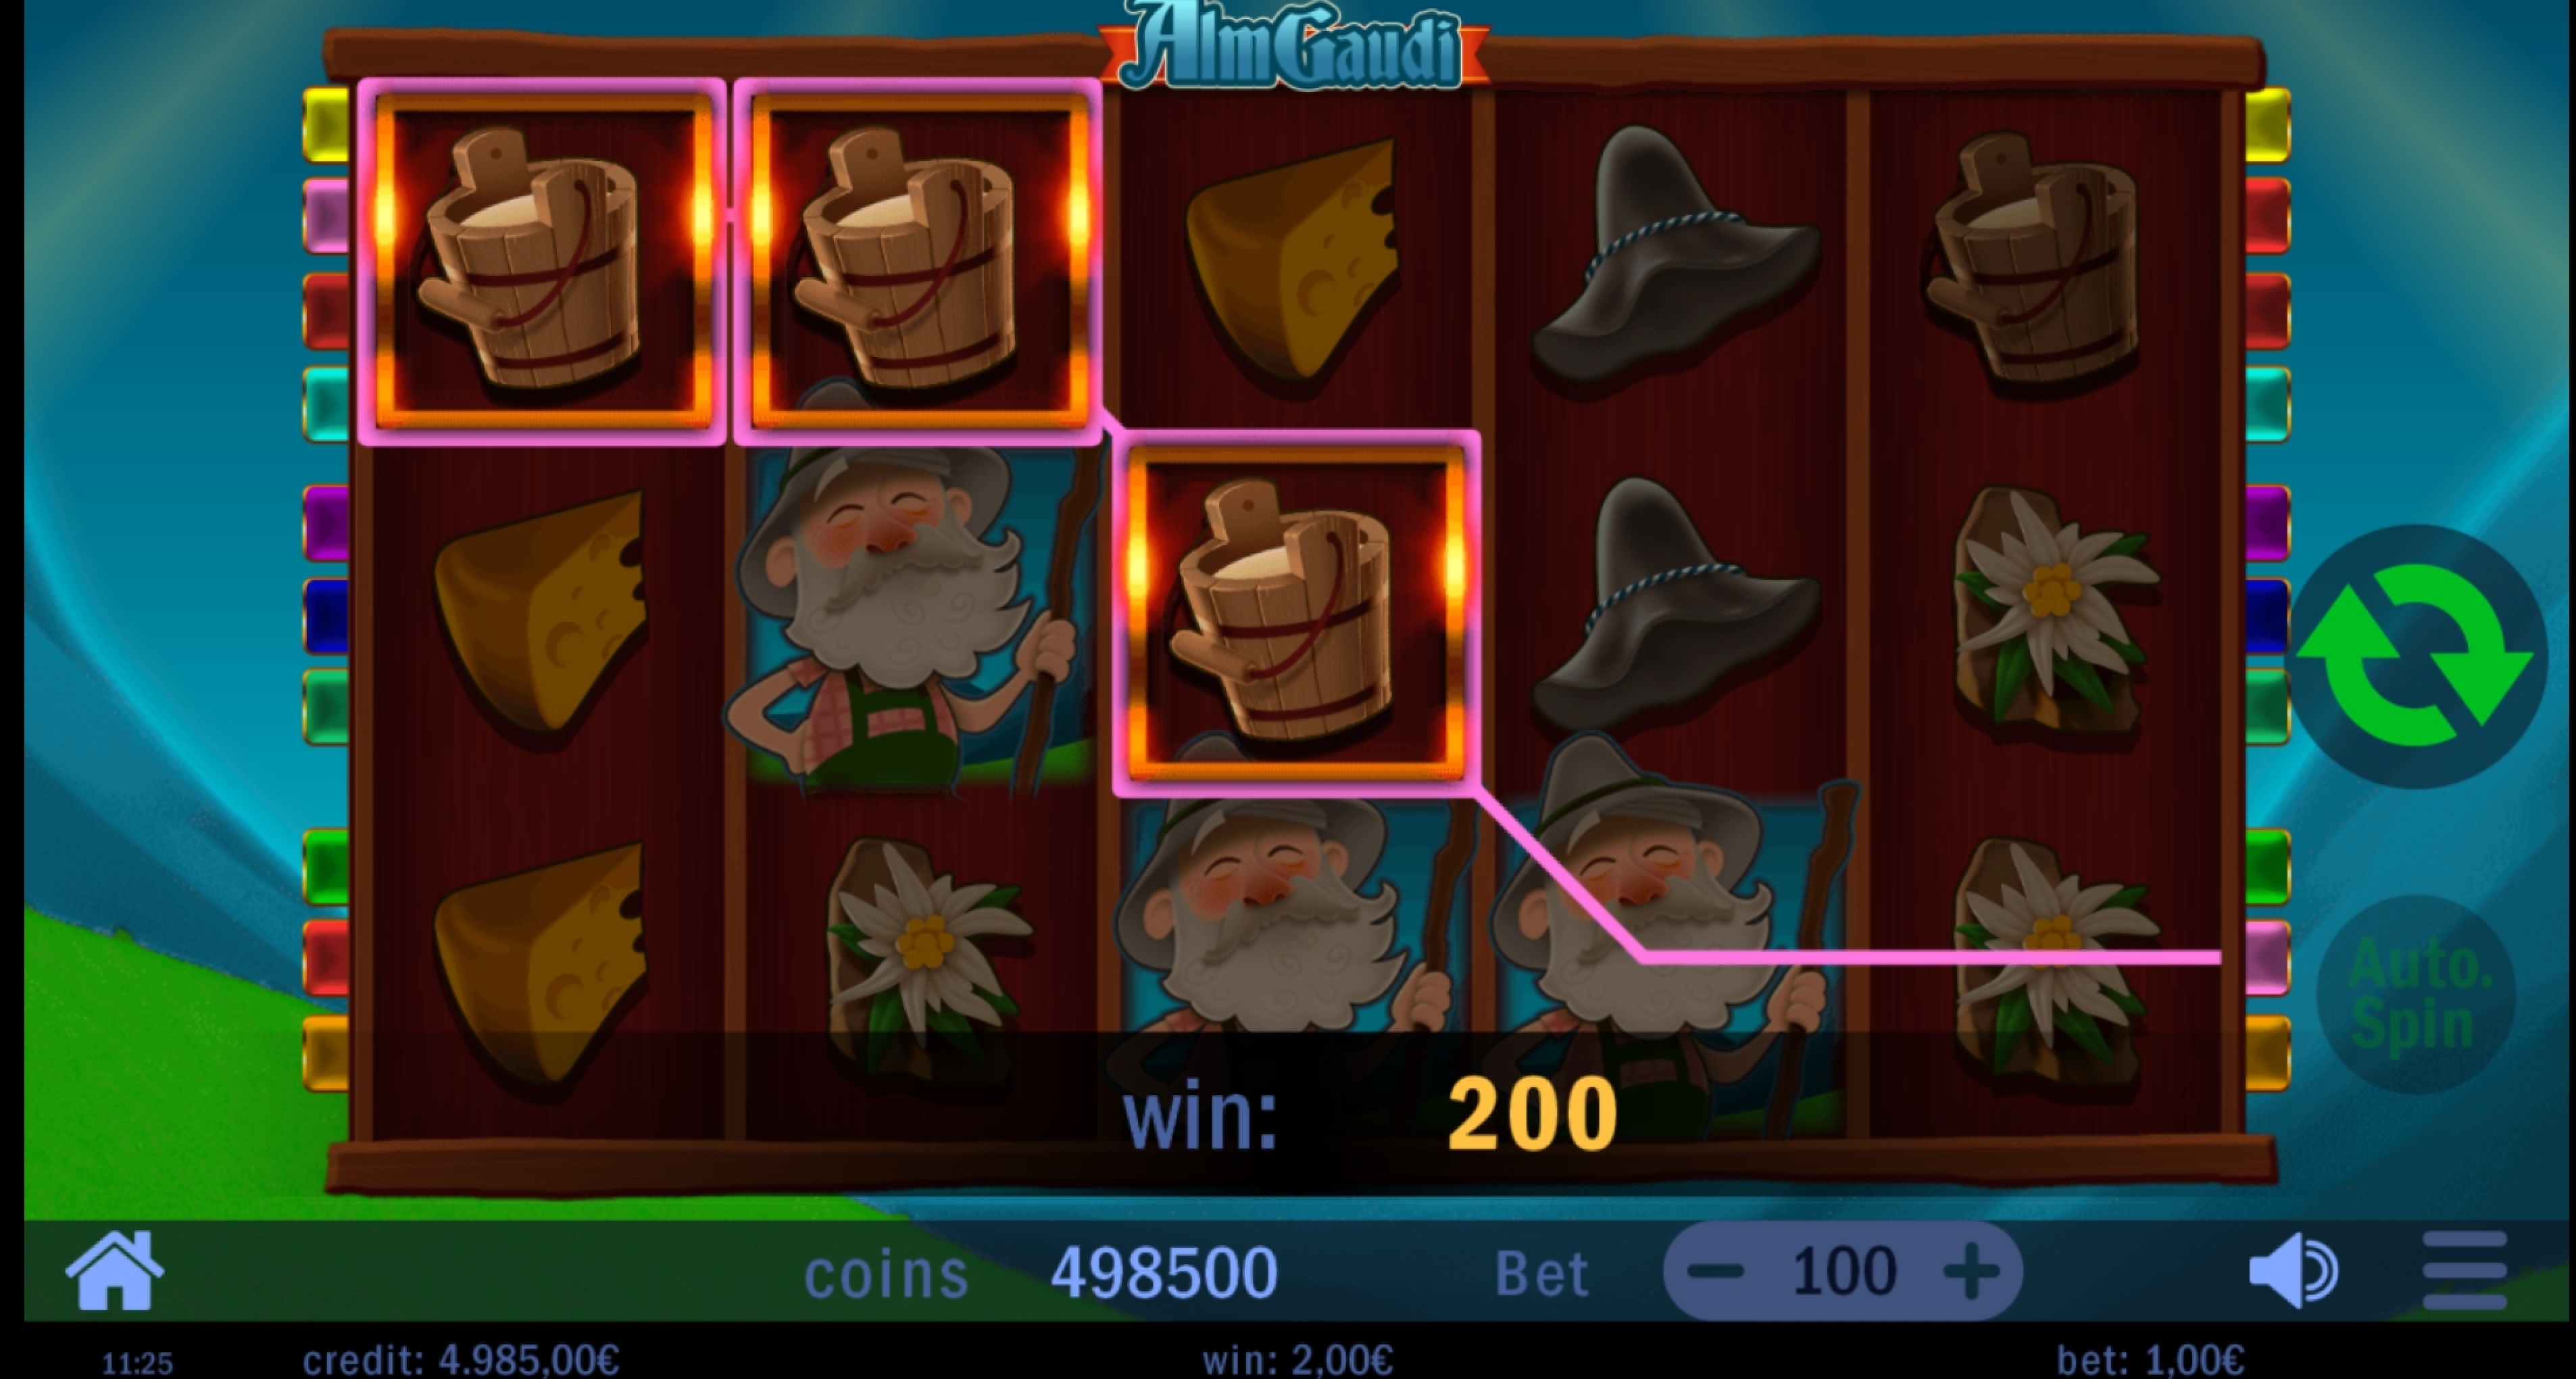 Win Money in Alm Gaudi Free Slot Game by Swintt